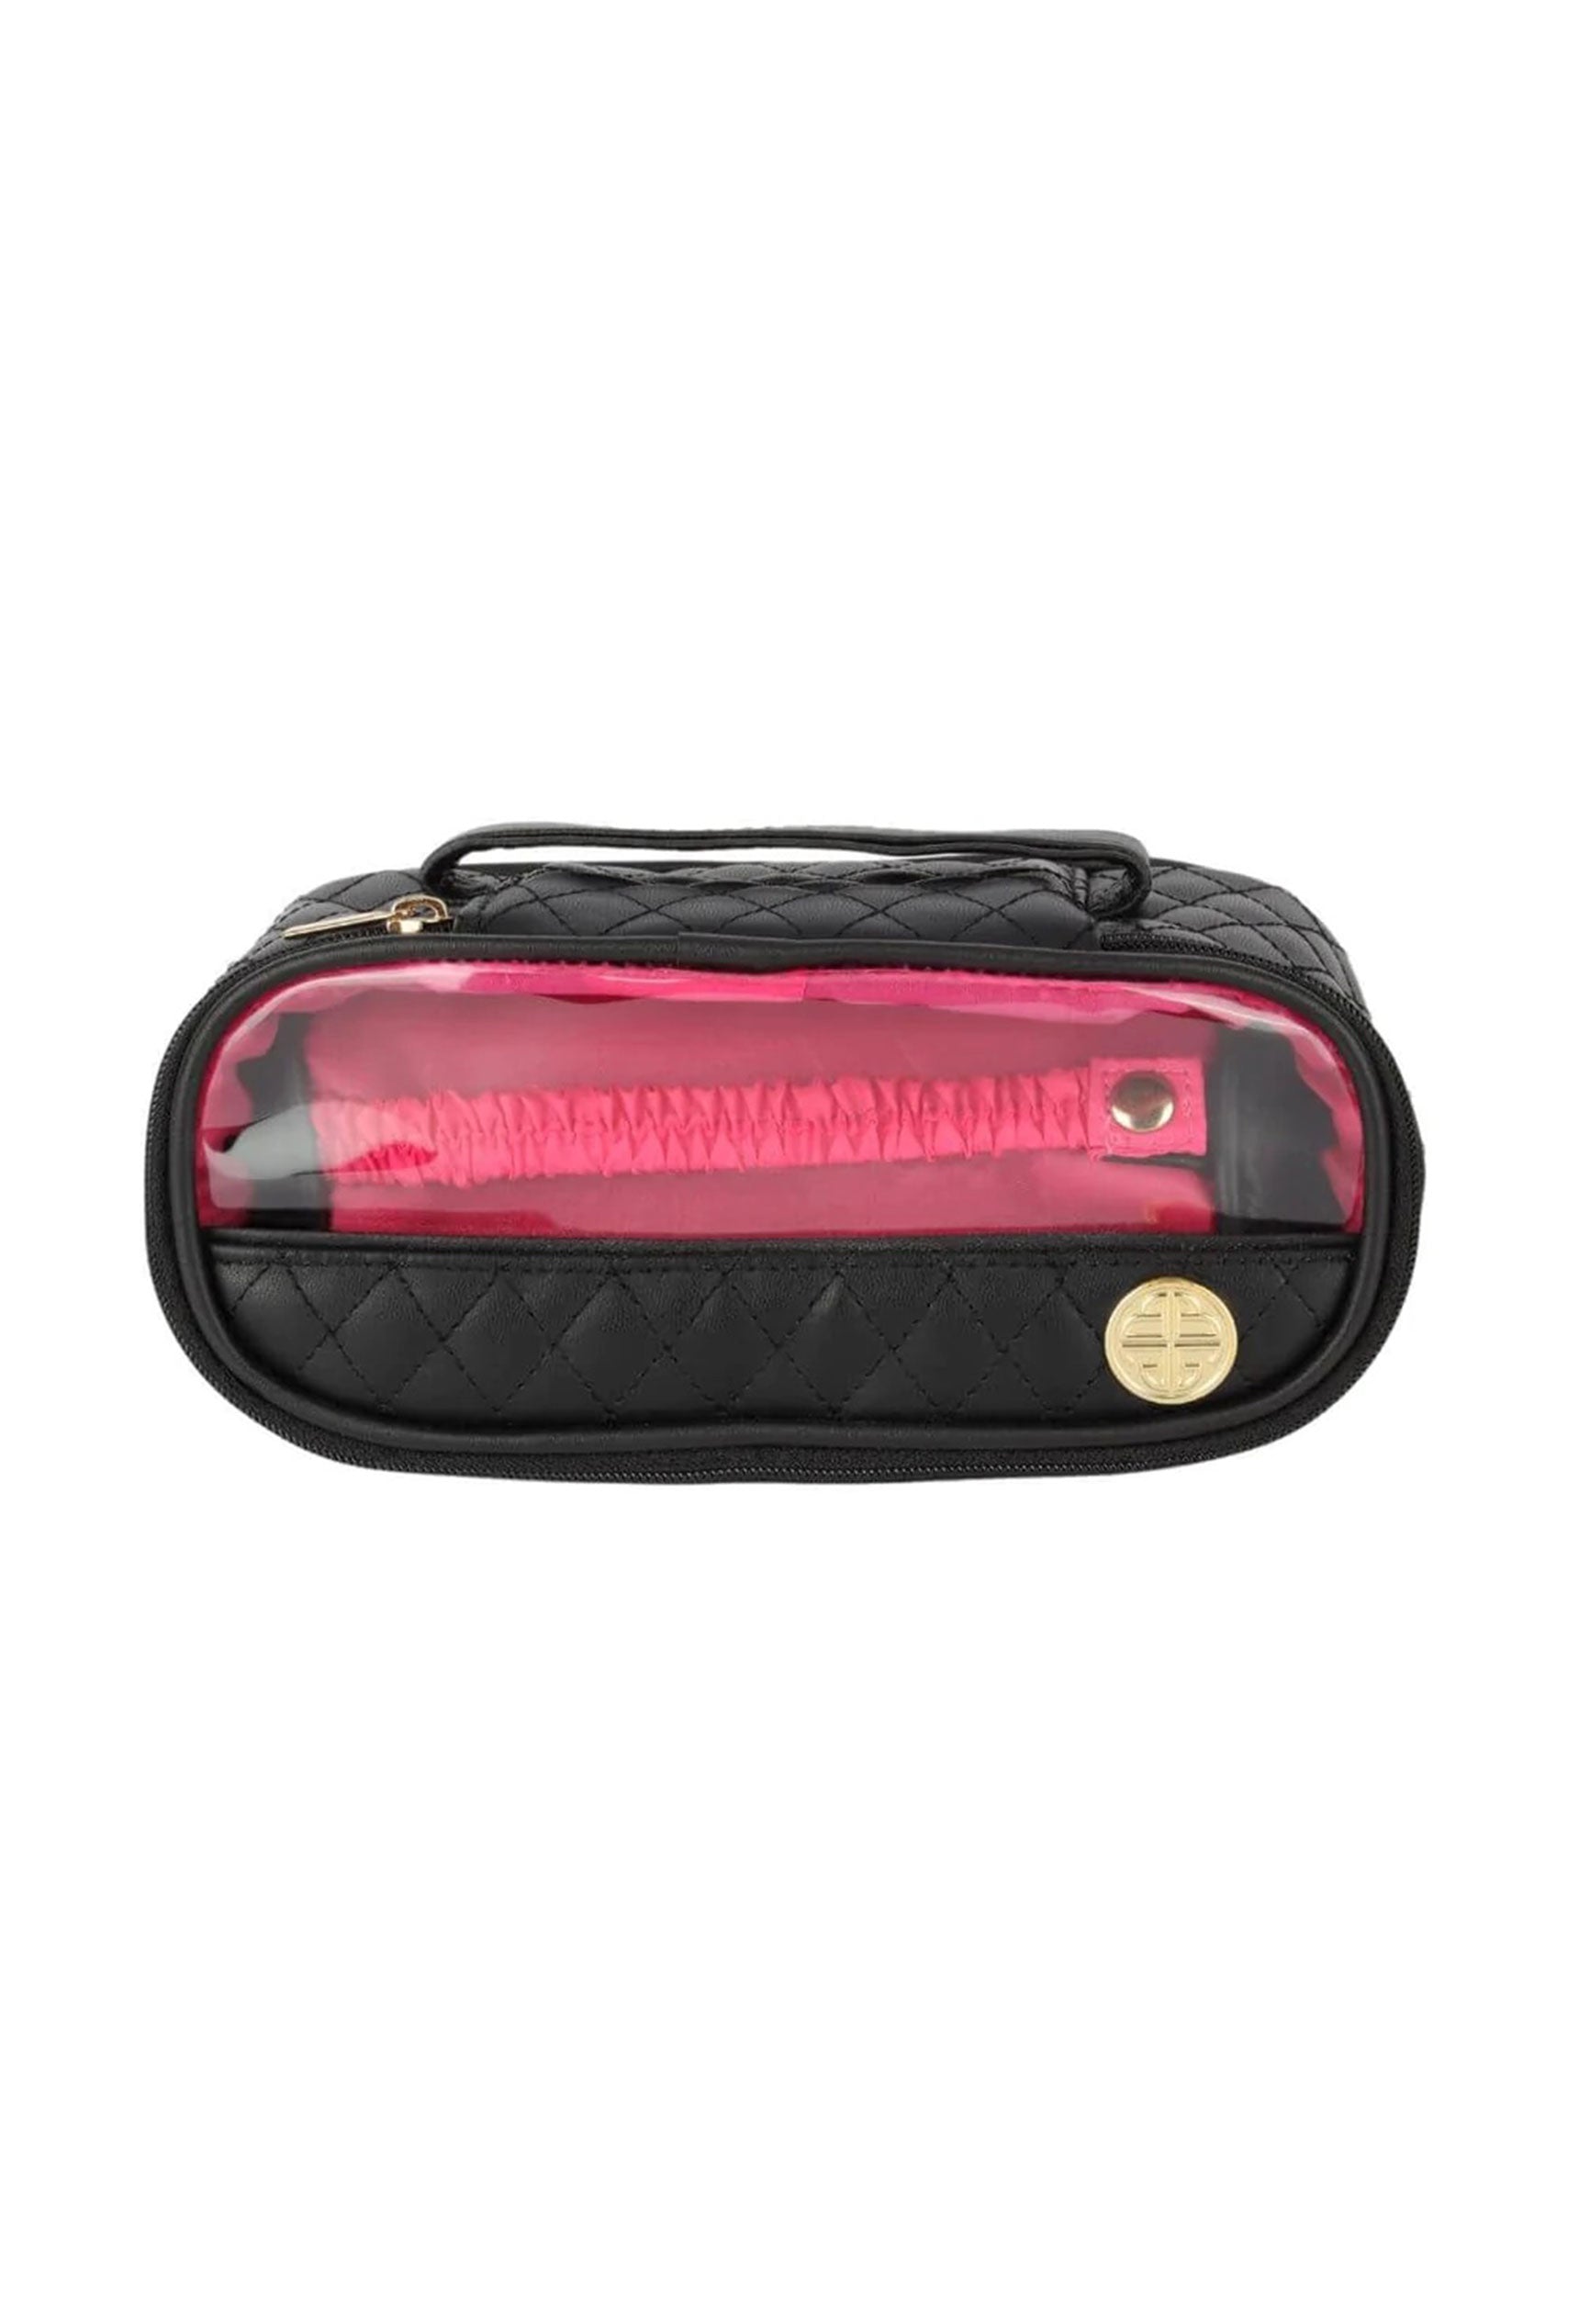 BUDHAGIRL Travel Case, black bracelet travel case, quilted with a handle, pink bracelet holder on the inside